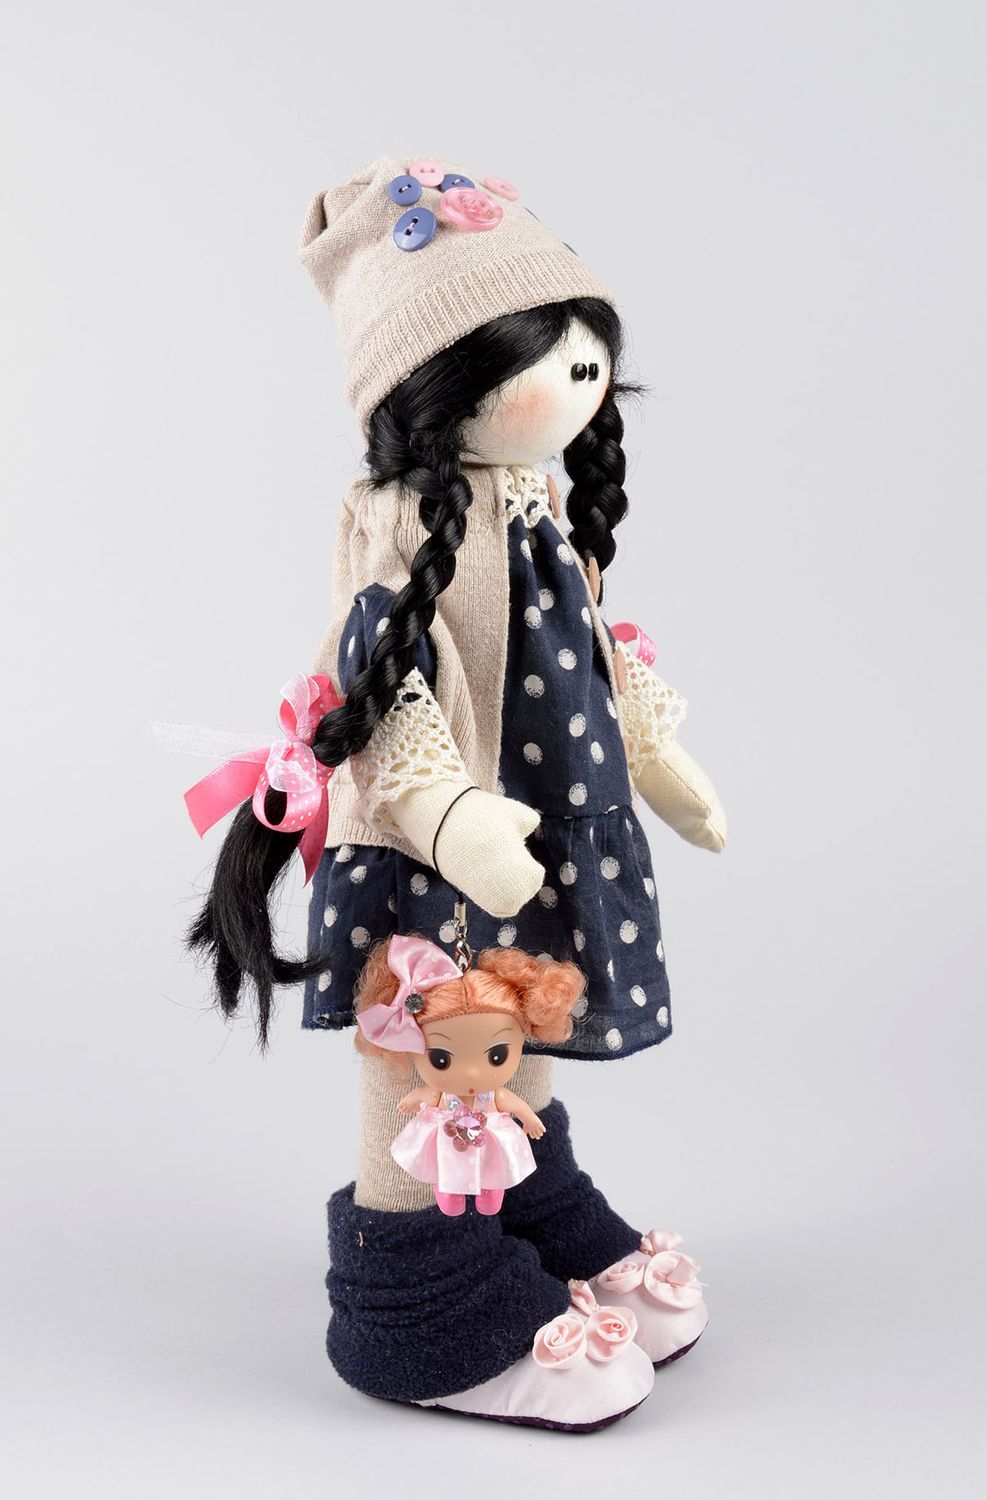 Kinder Spielzeug handmade Kinder Puppe originell weiche Kuscheltiere schön foto 2